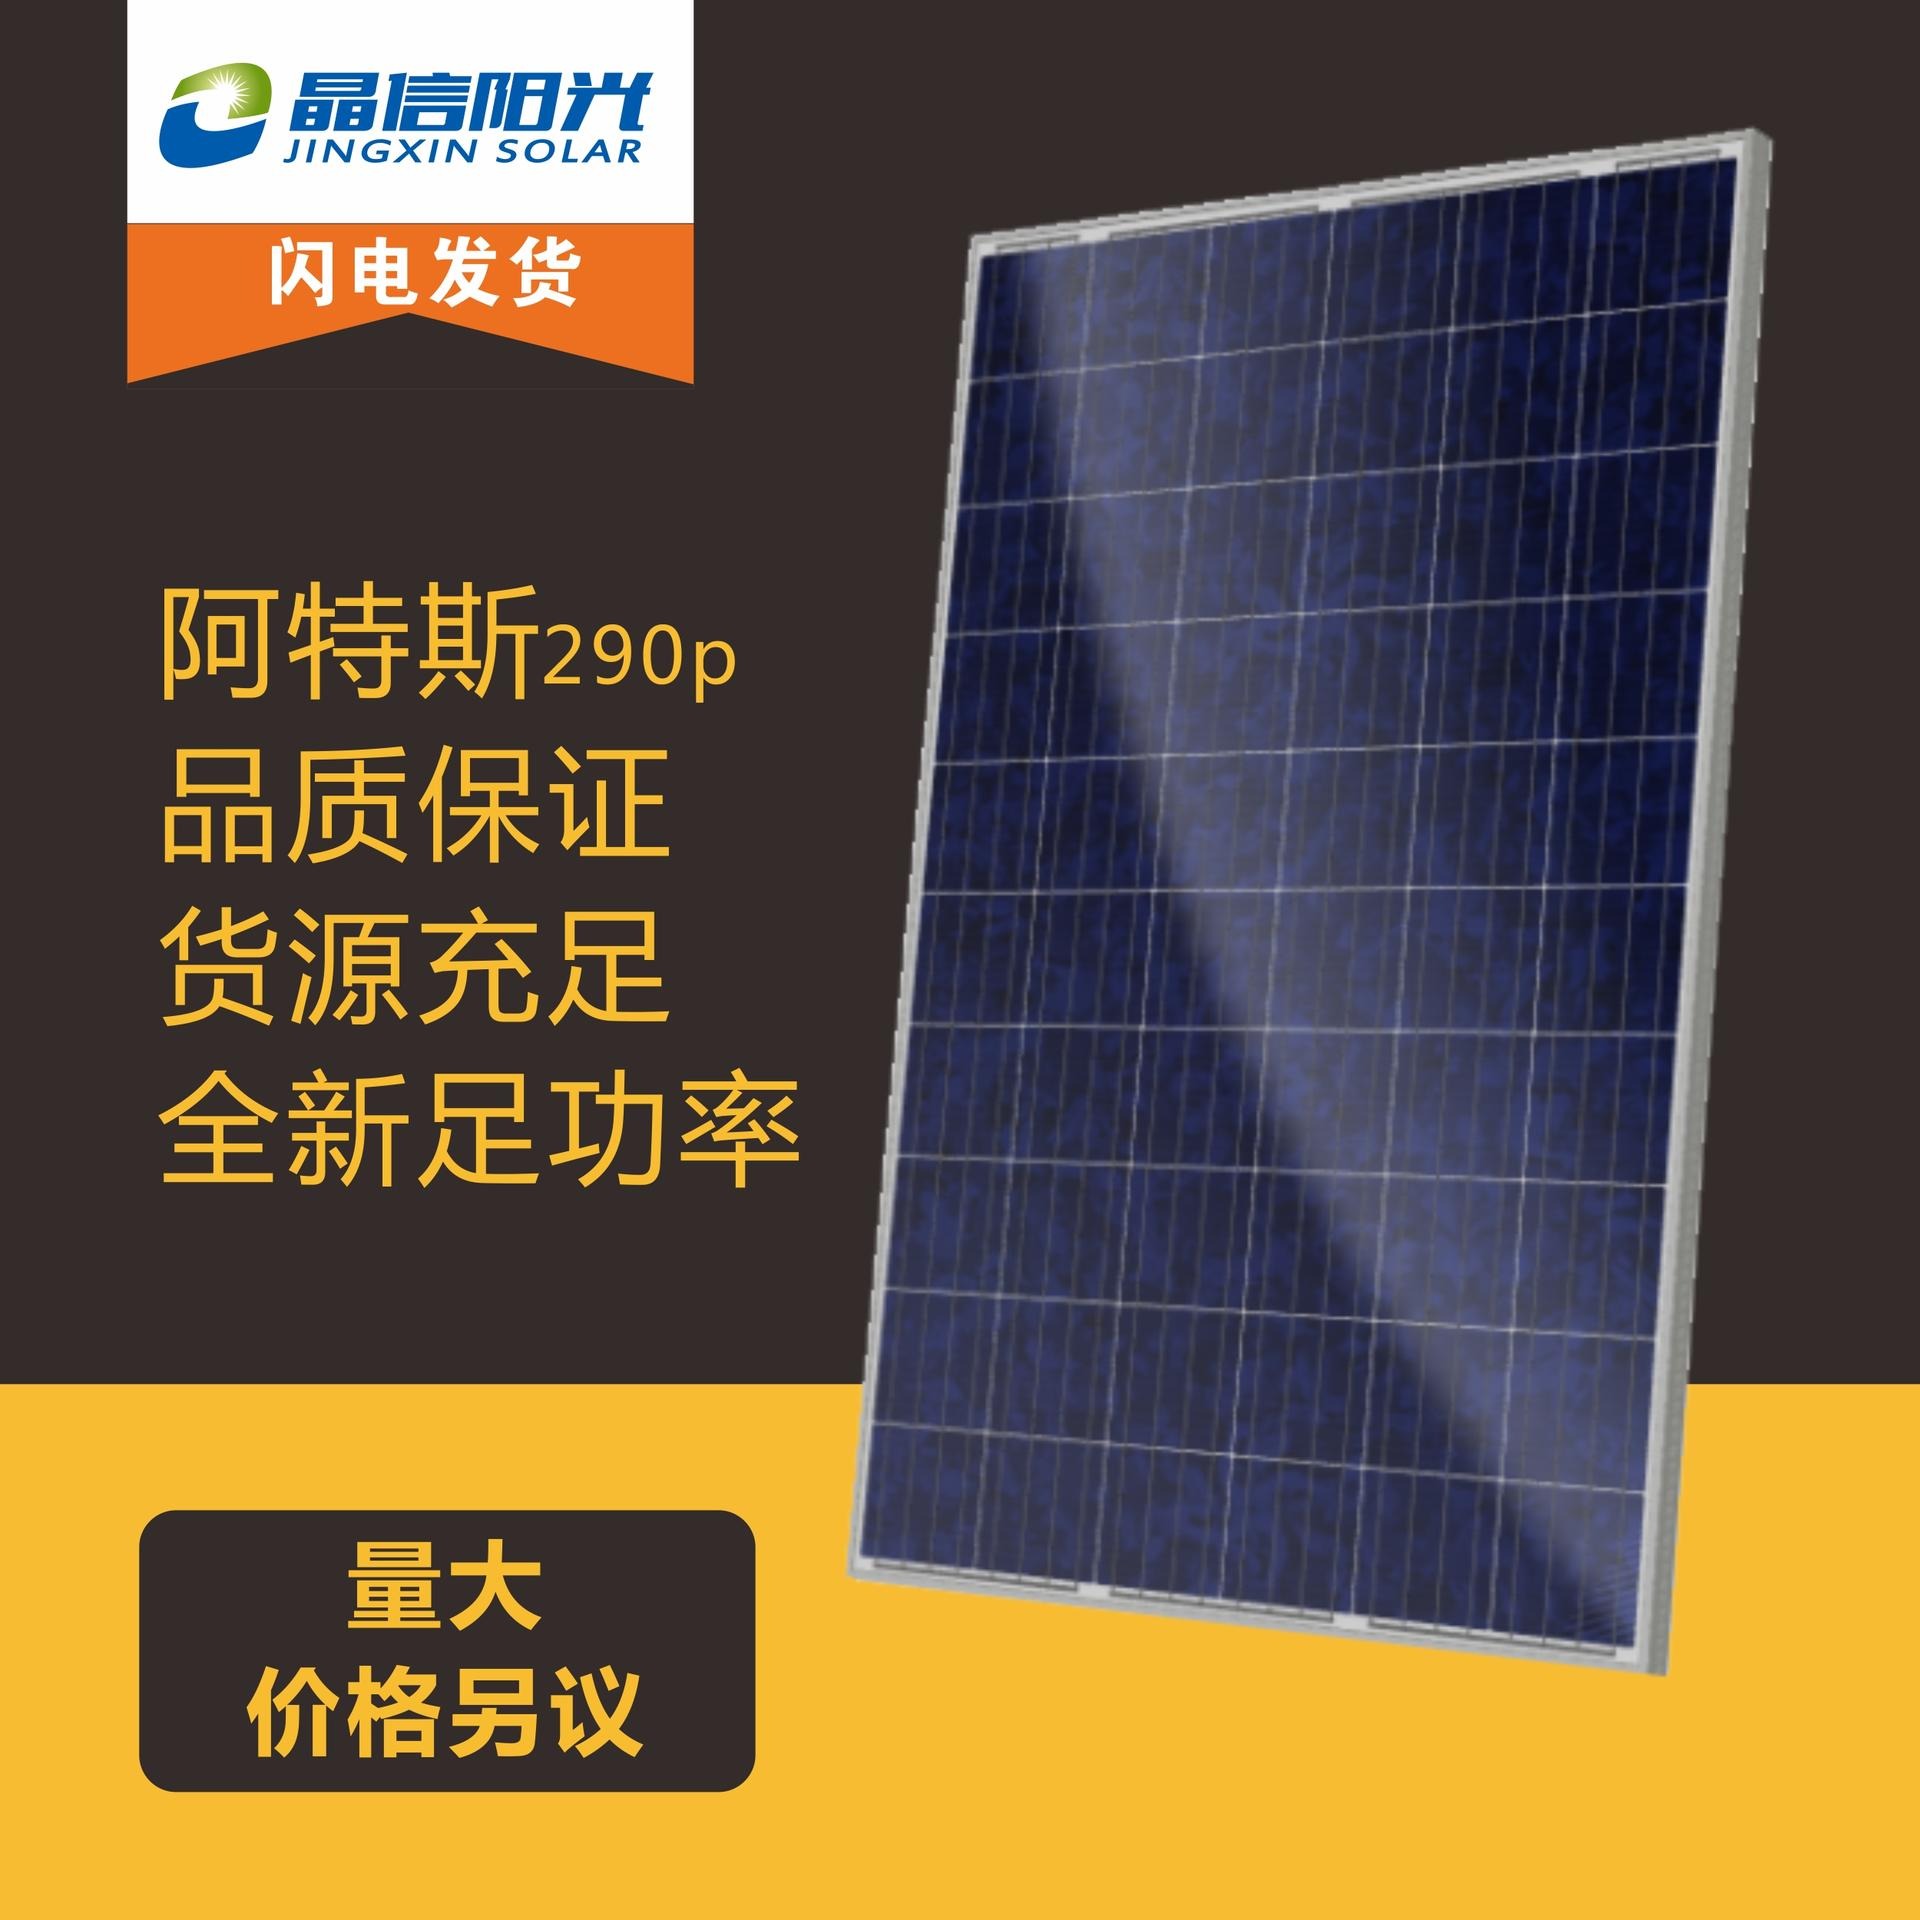 厂家直销 供应阿特斯多晶290w 光伏组件太阳能发电板 光伏板